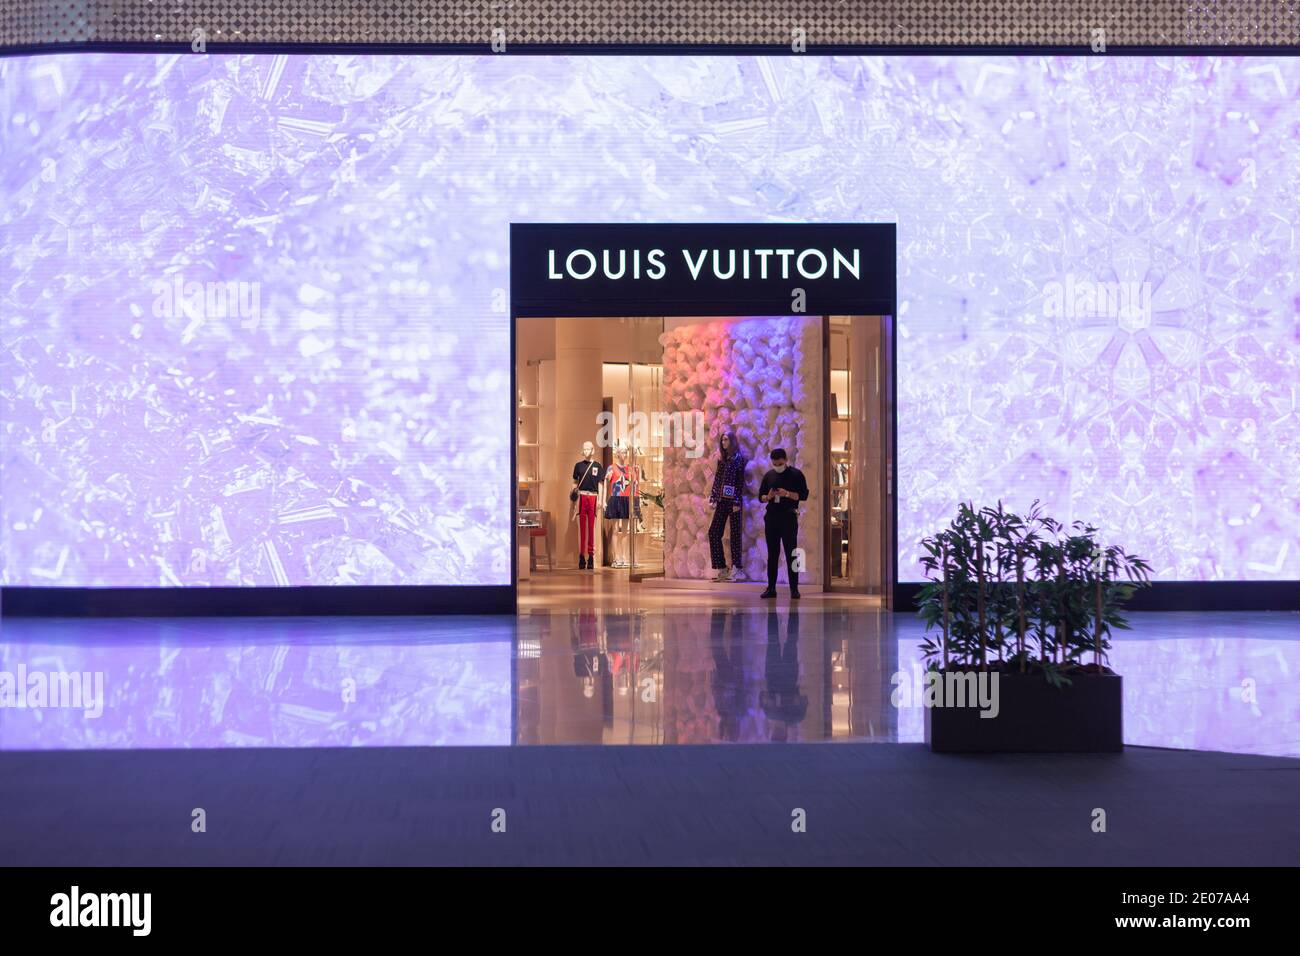 Istanbul, Türkei - ca. dezember 2020: Schaufenster des Louis Vuitton  Stores. Louis Vuitton ist ein französisches Modehaus, eines der weltweit  führenden Stockfotografie - Alamy